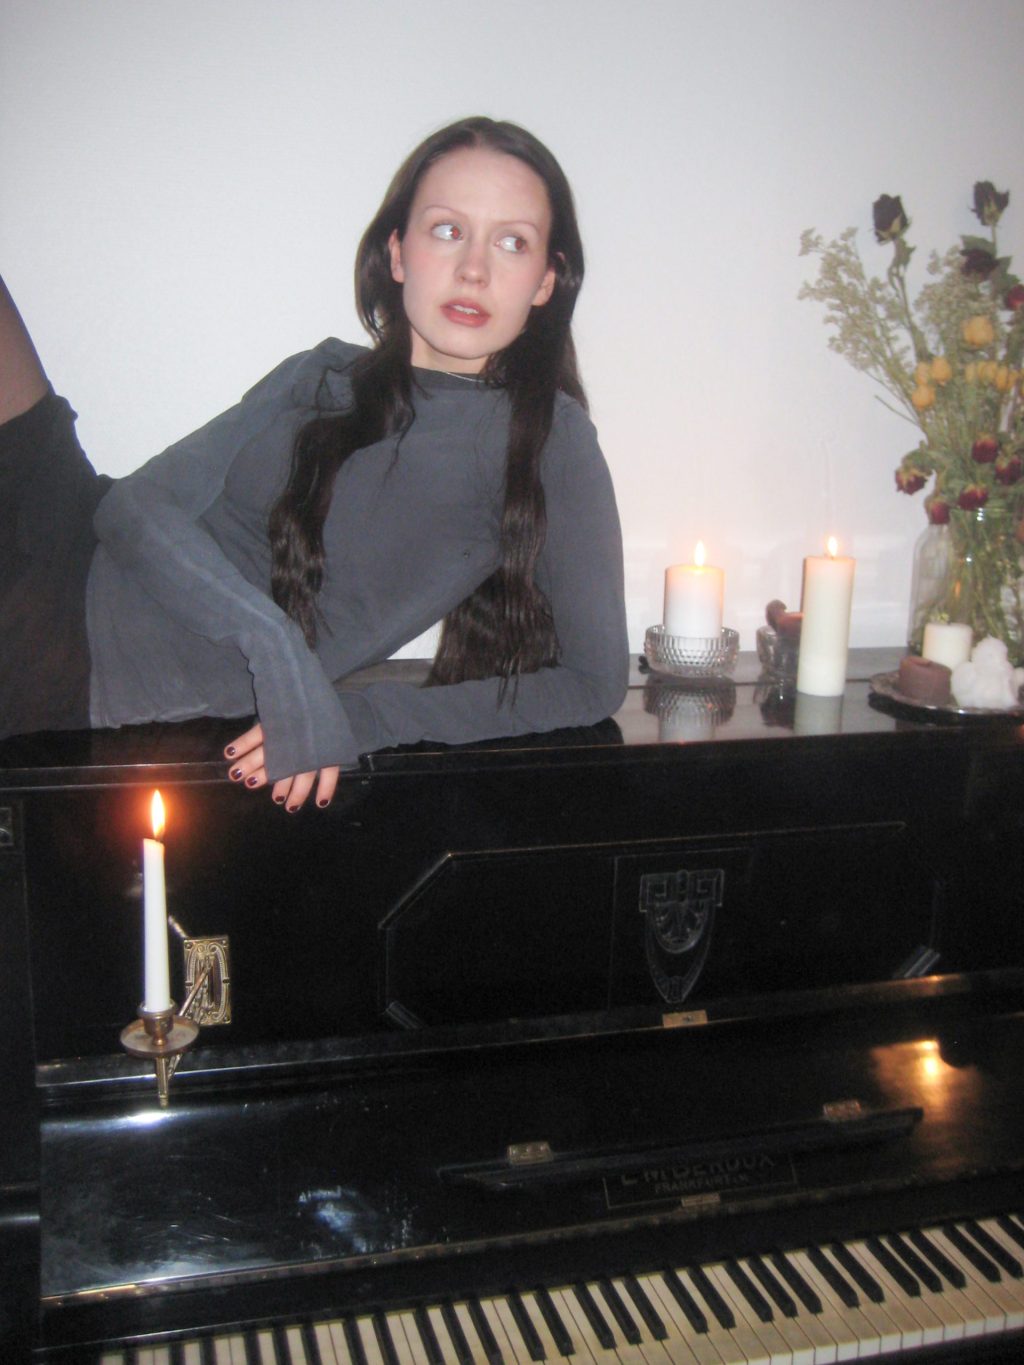 Nuori nainen nojaa pianoon, jonka päällä kynttilöitä.